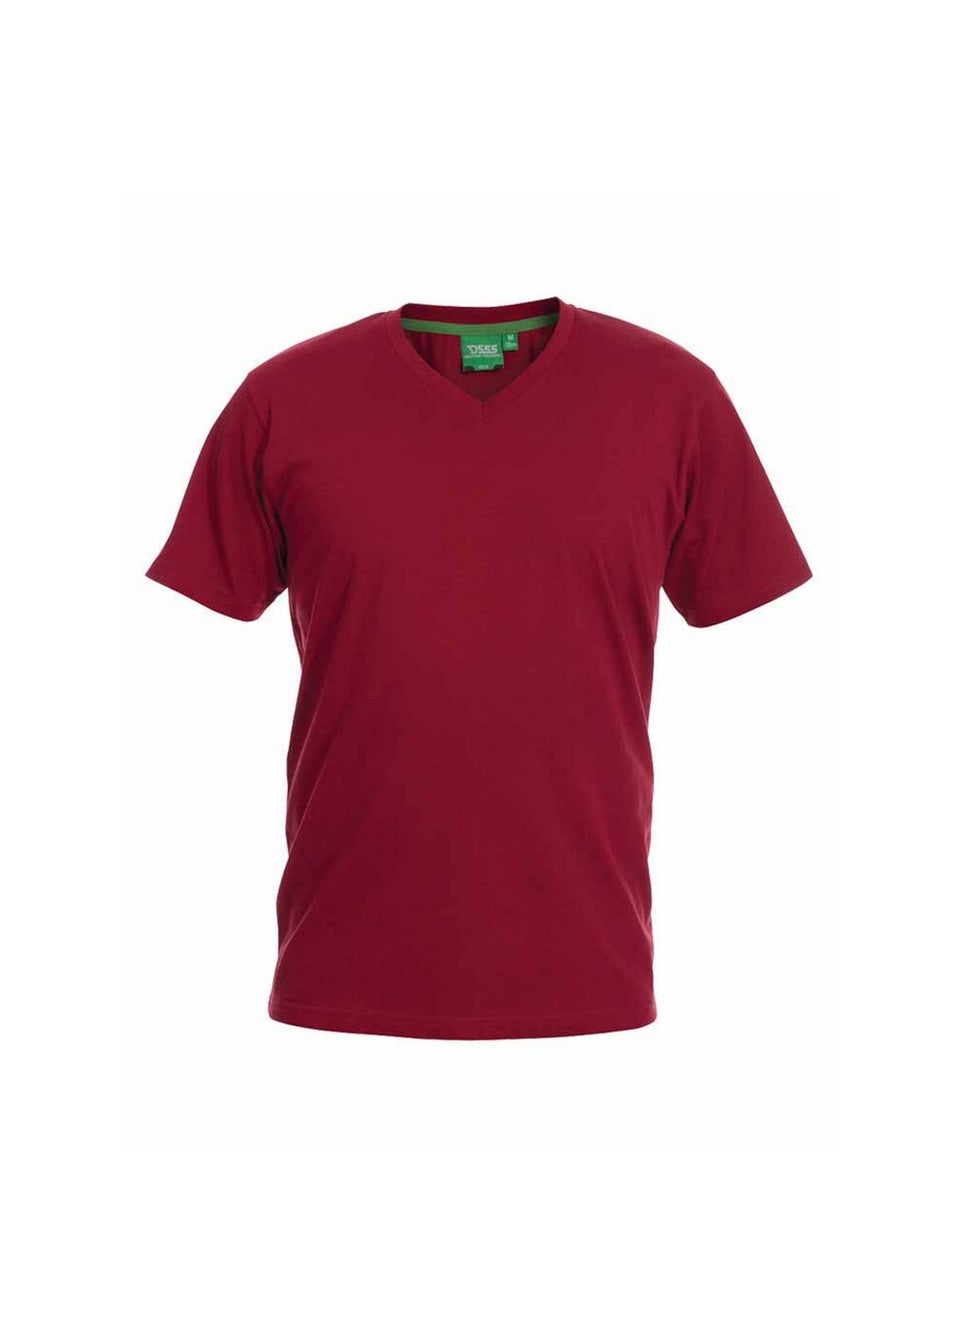 Duke Red Signature 2 Kingsize Cotton V Neck T-Shirt